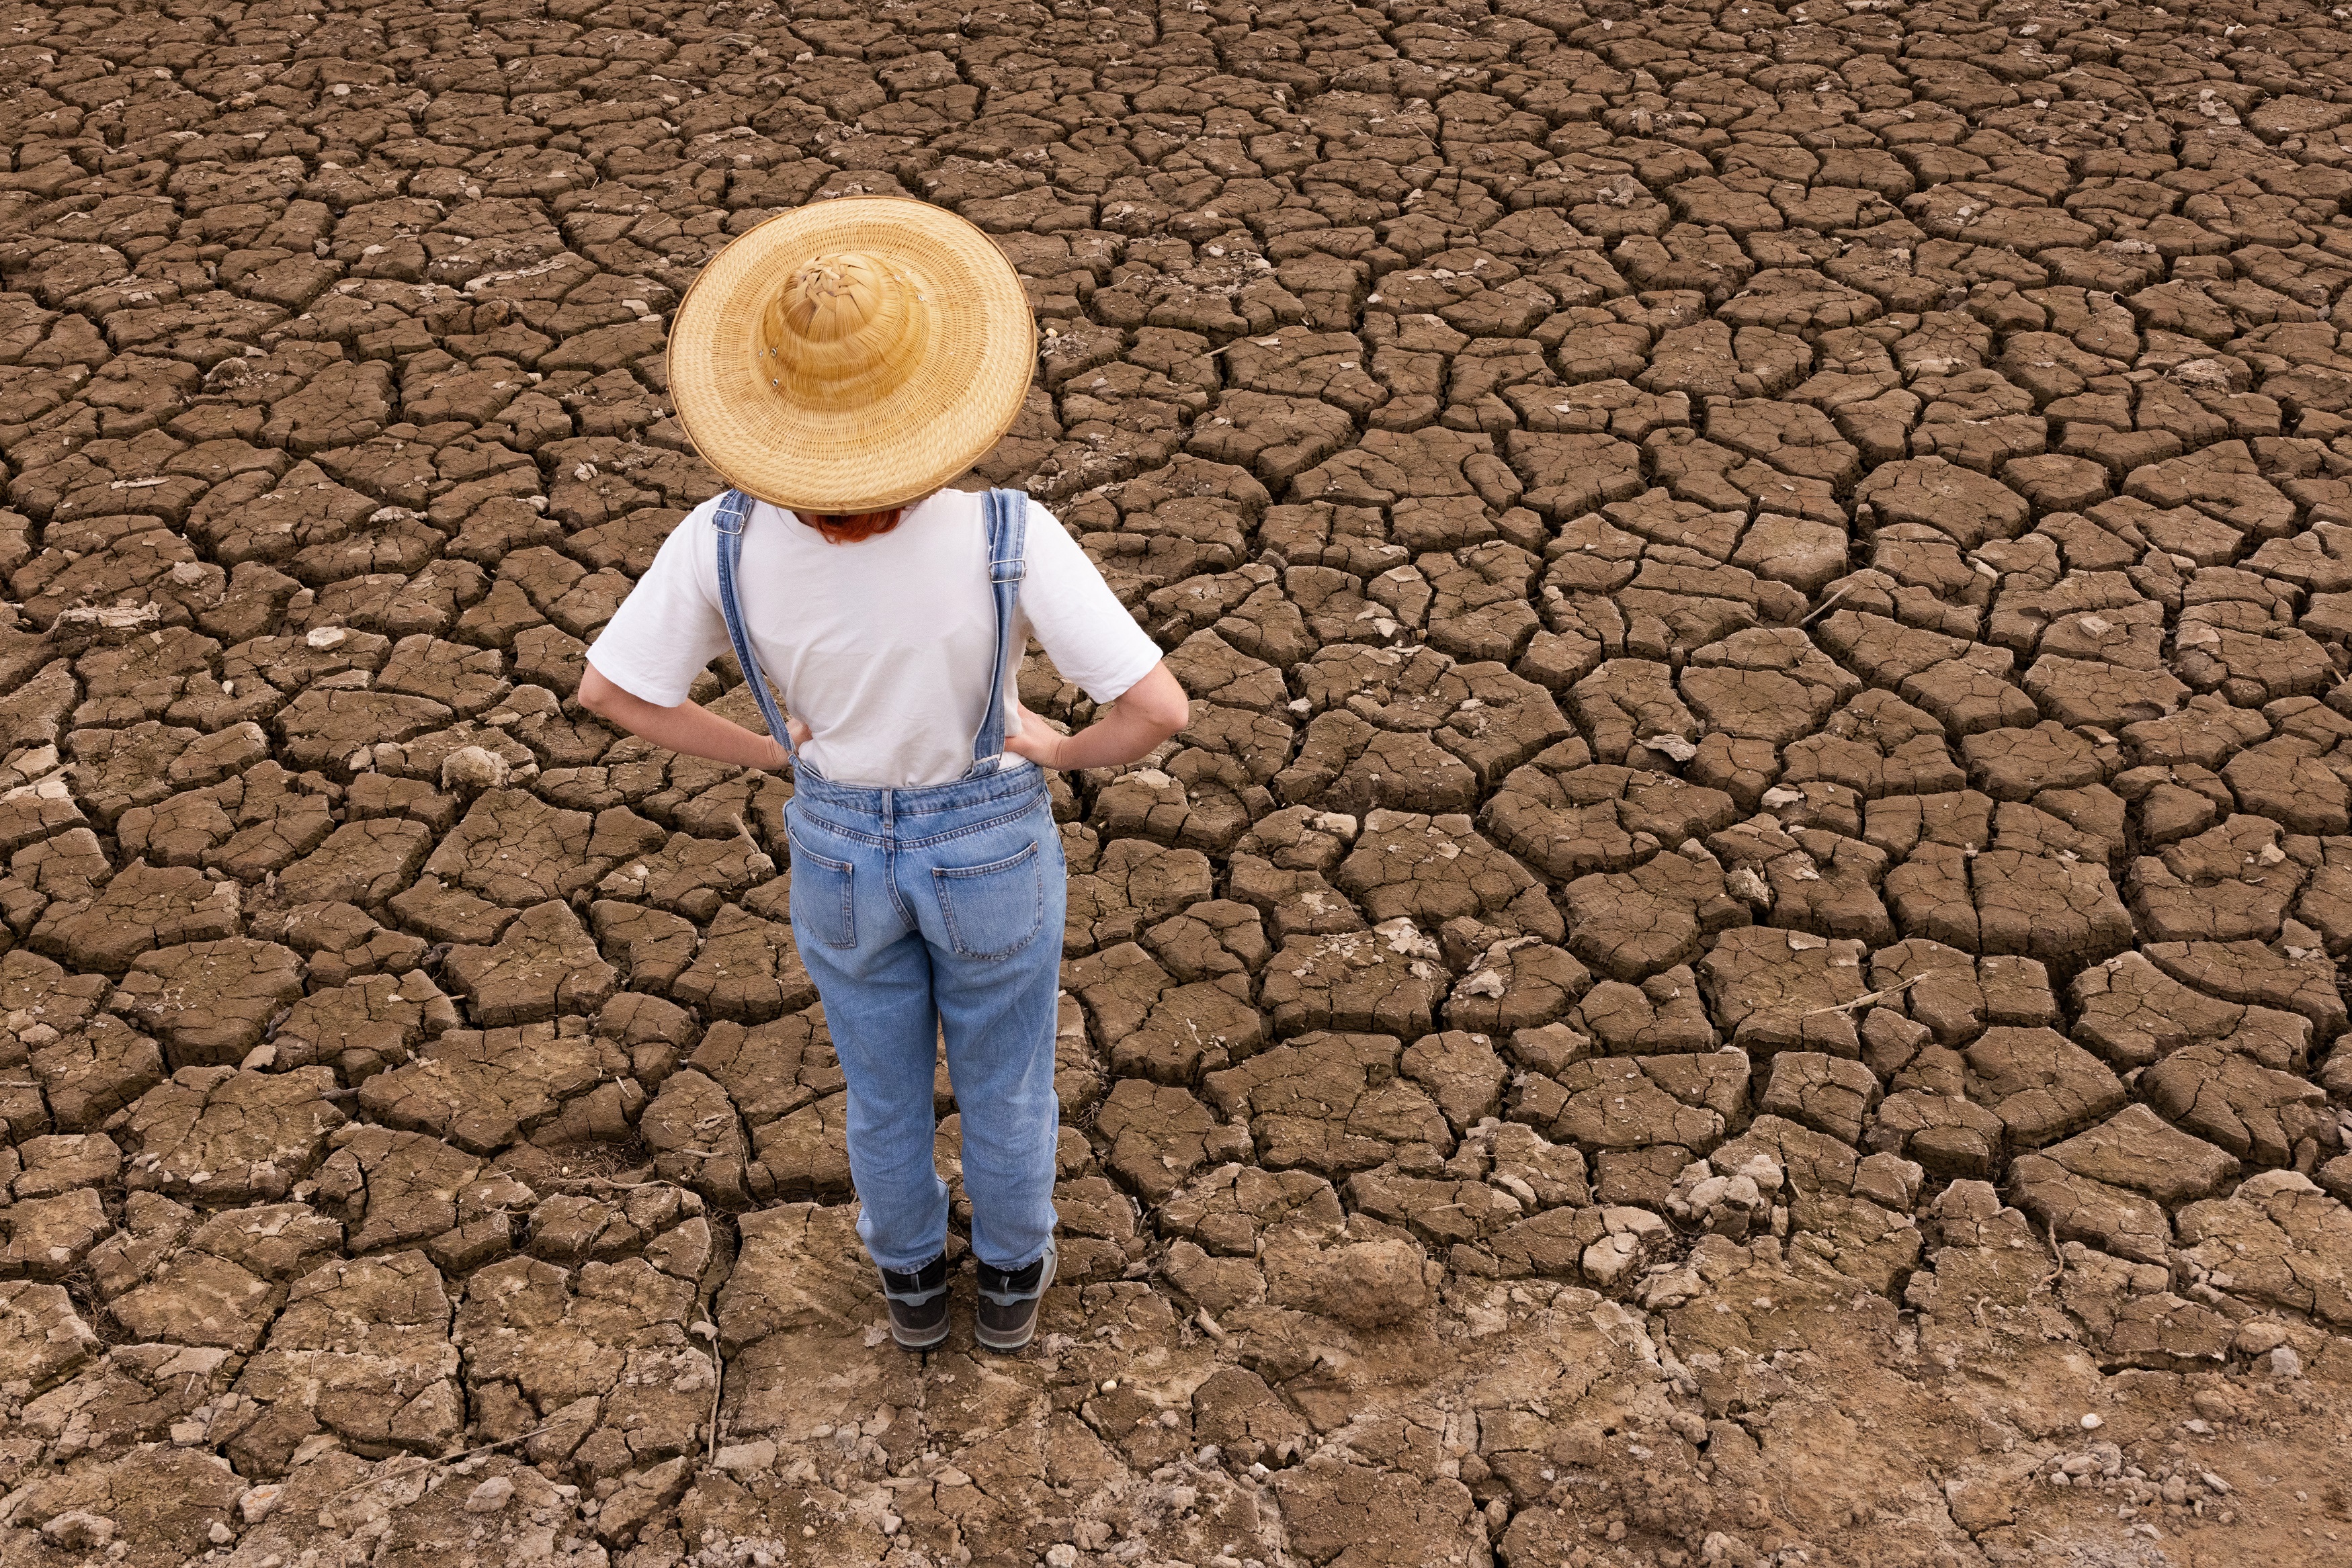 Les sécheresses s'étalant sur plusieurs années vont se multiplier dans les prochaines décennies. © VICTOR, Adobe Stock